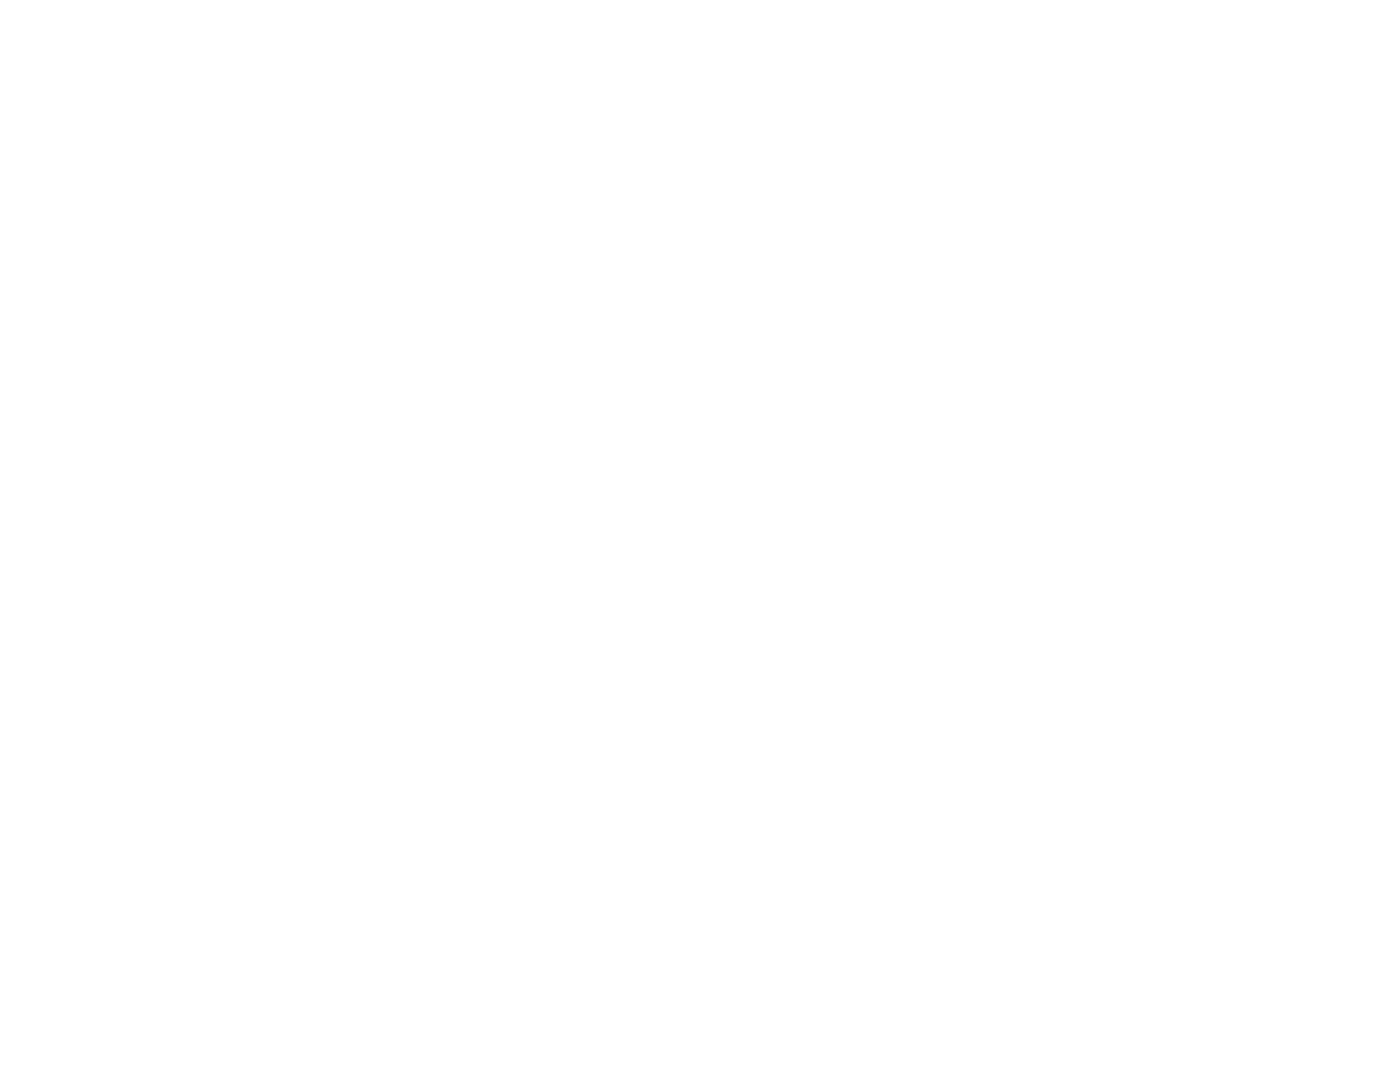 Picon Press Media